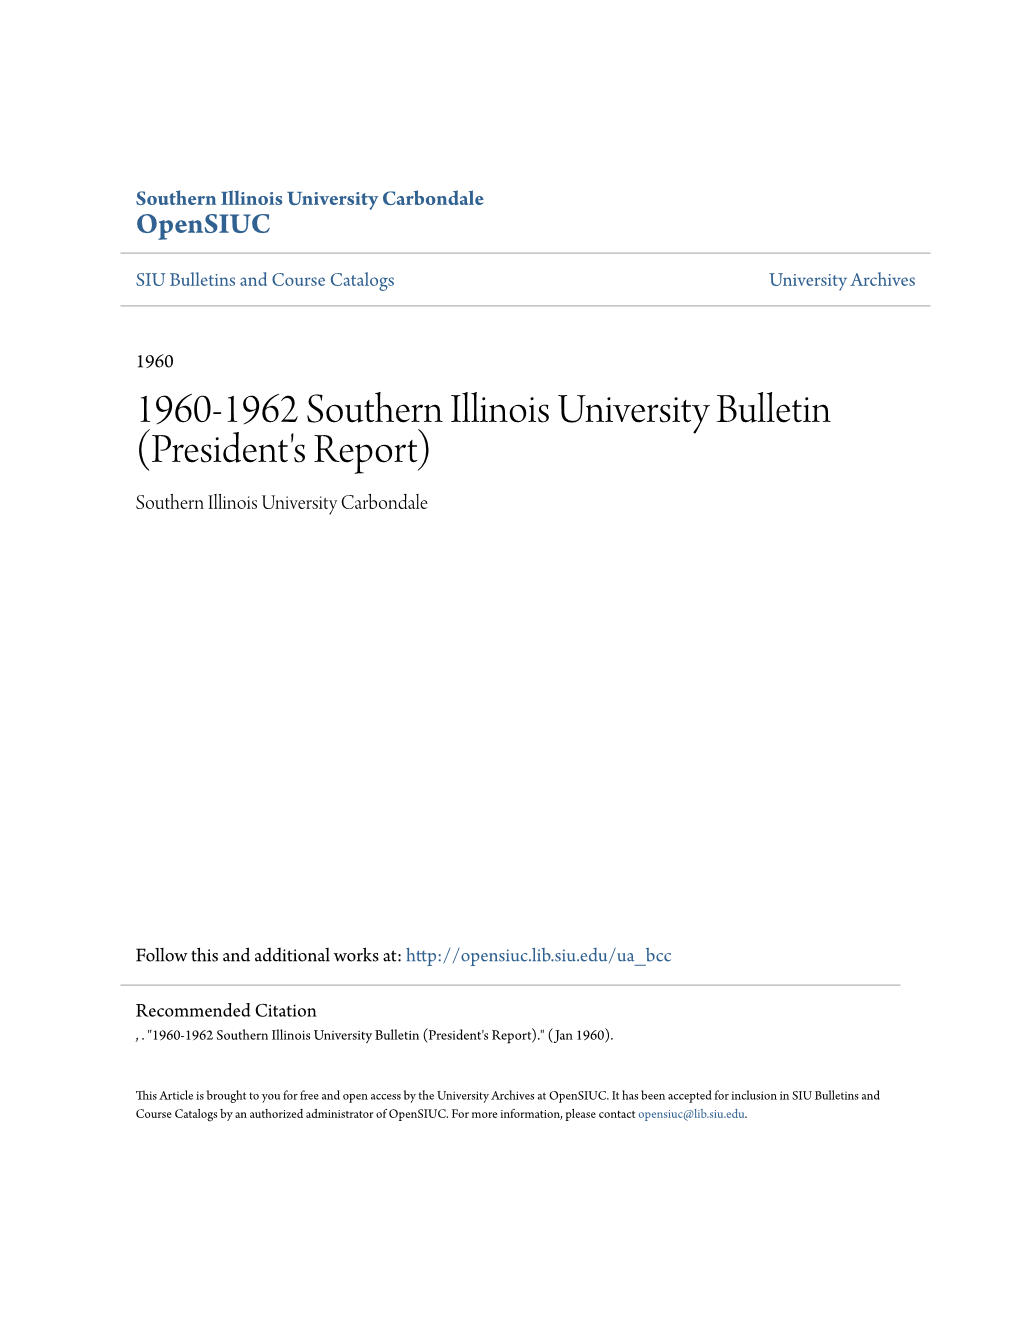 1960-1962 Southern Illinois University Bulletin (President's Report) Southern Illinois University Carbondale